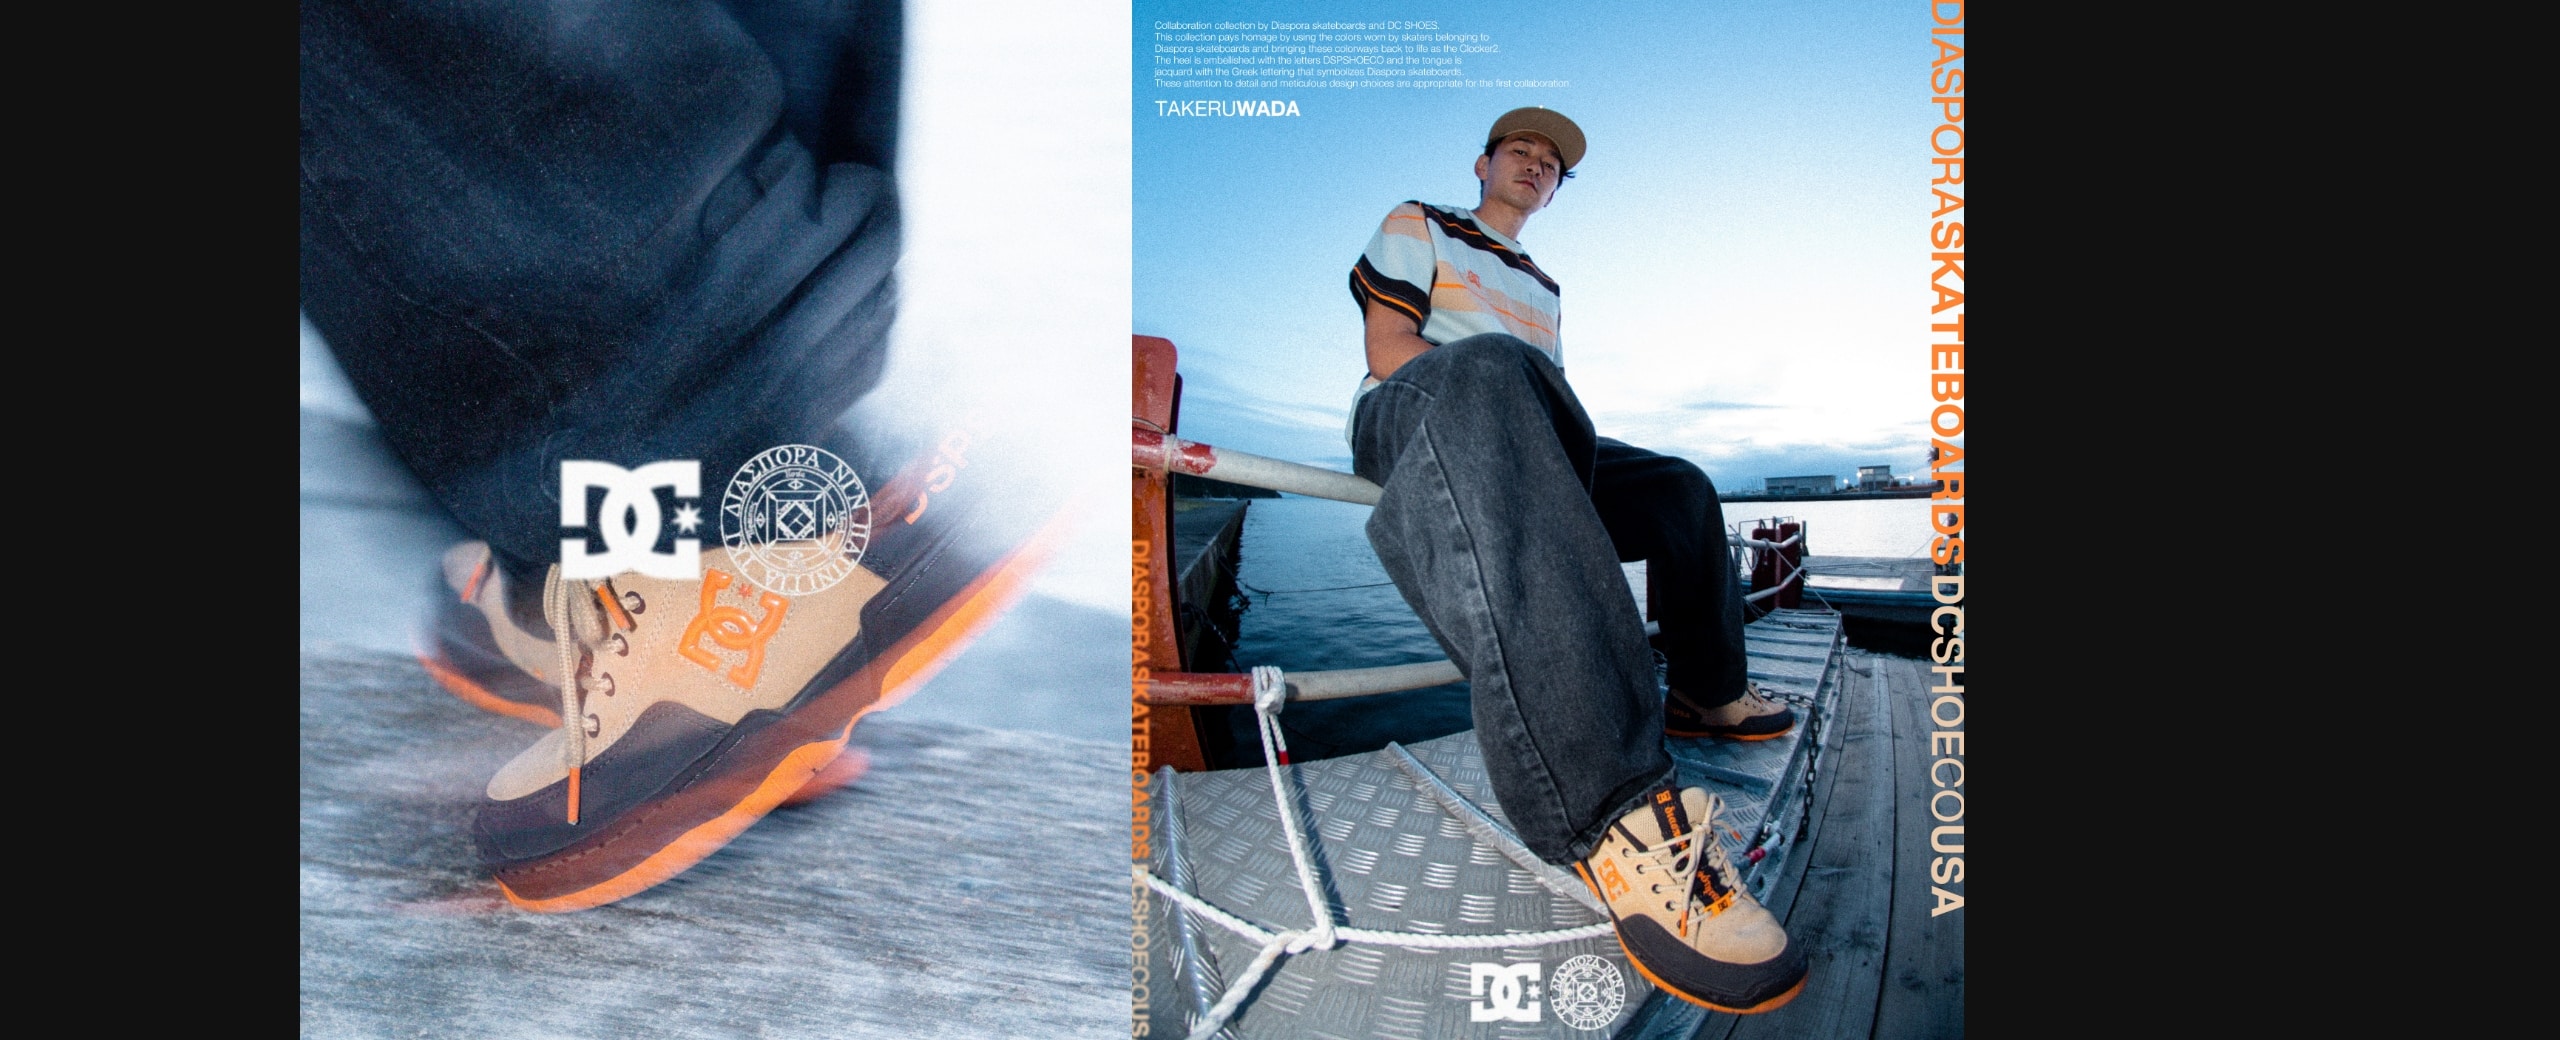 "DC SHOES x Diaspora skateboards"